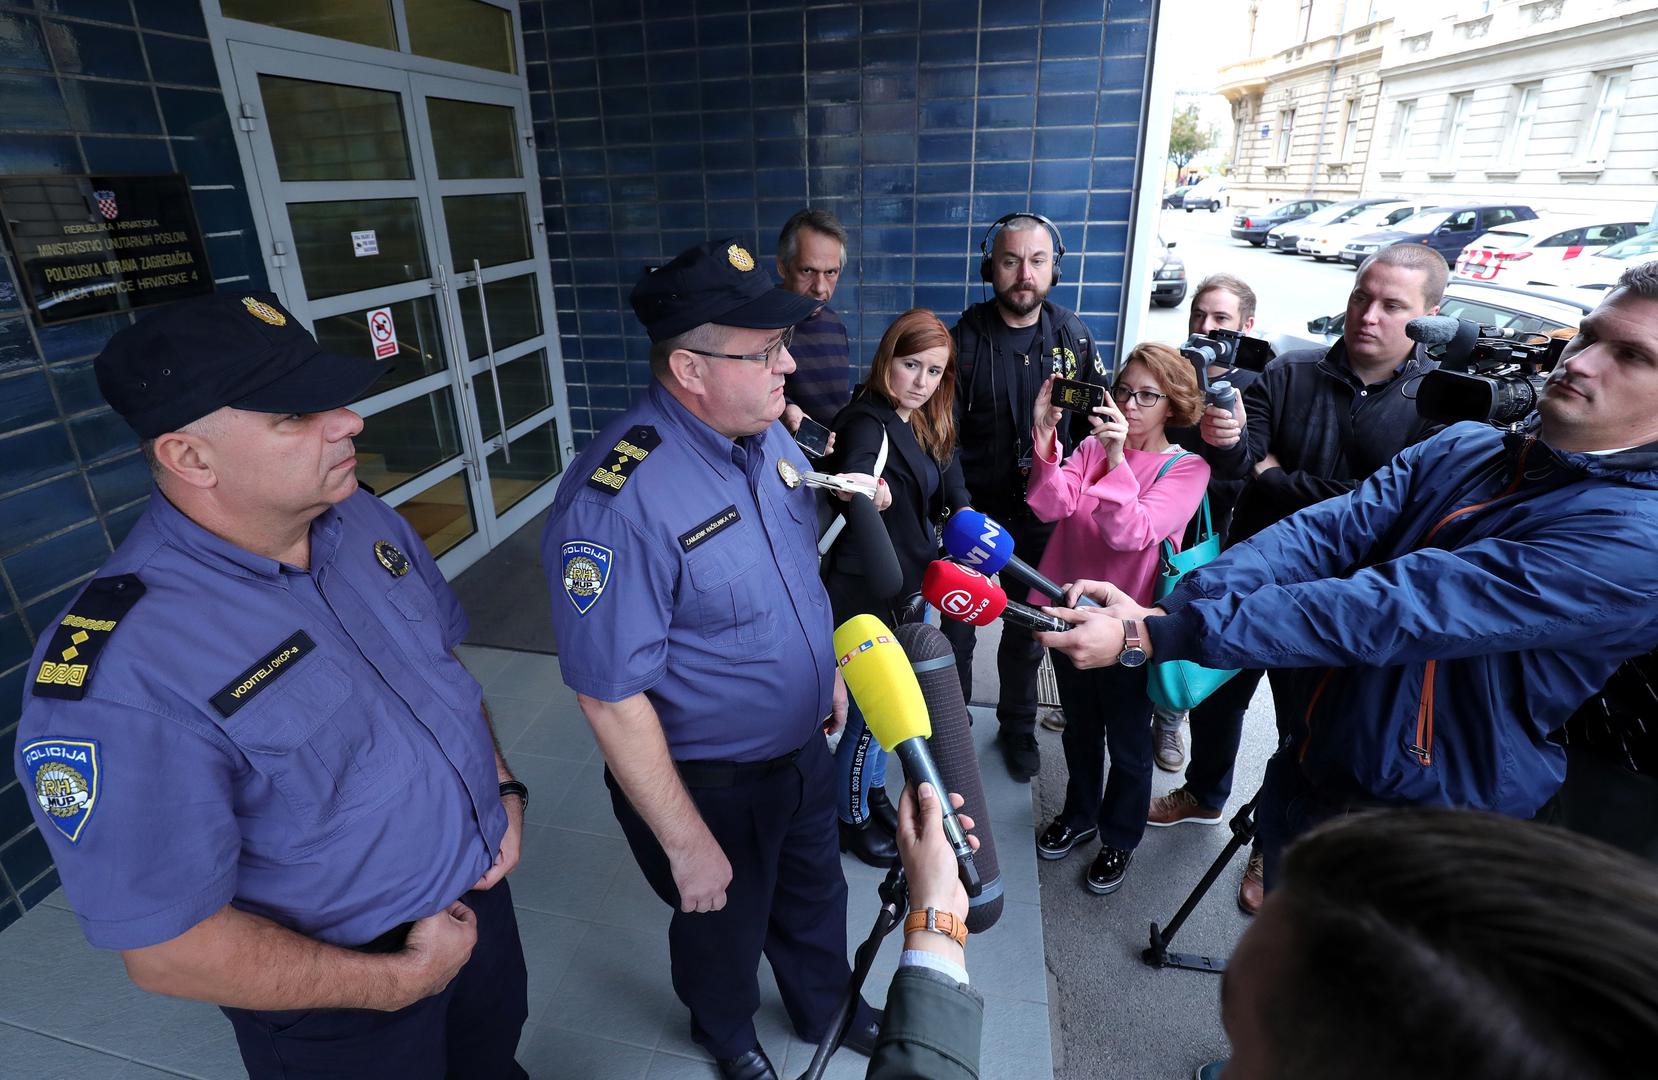 Dubravko Teur, zamjenik načenika PU zagrebačke, na konferencijiza novinare rekao je da dvije pucnjave u Zagrebu nisu međusobno povezane